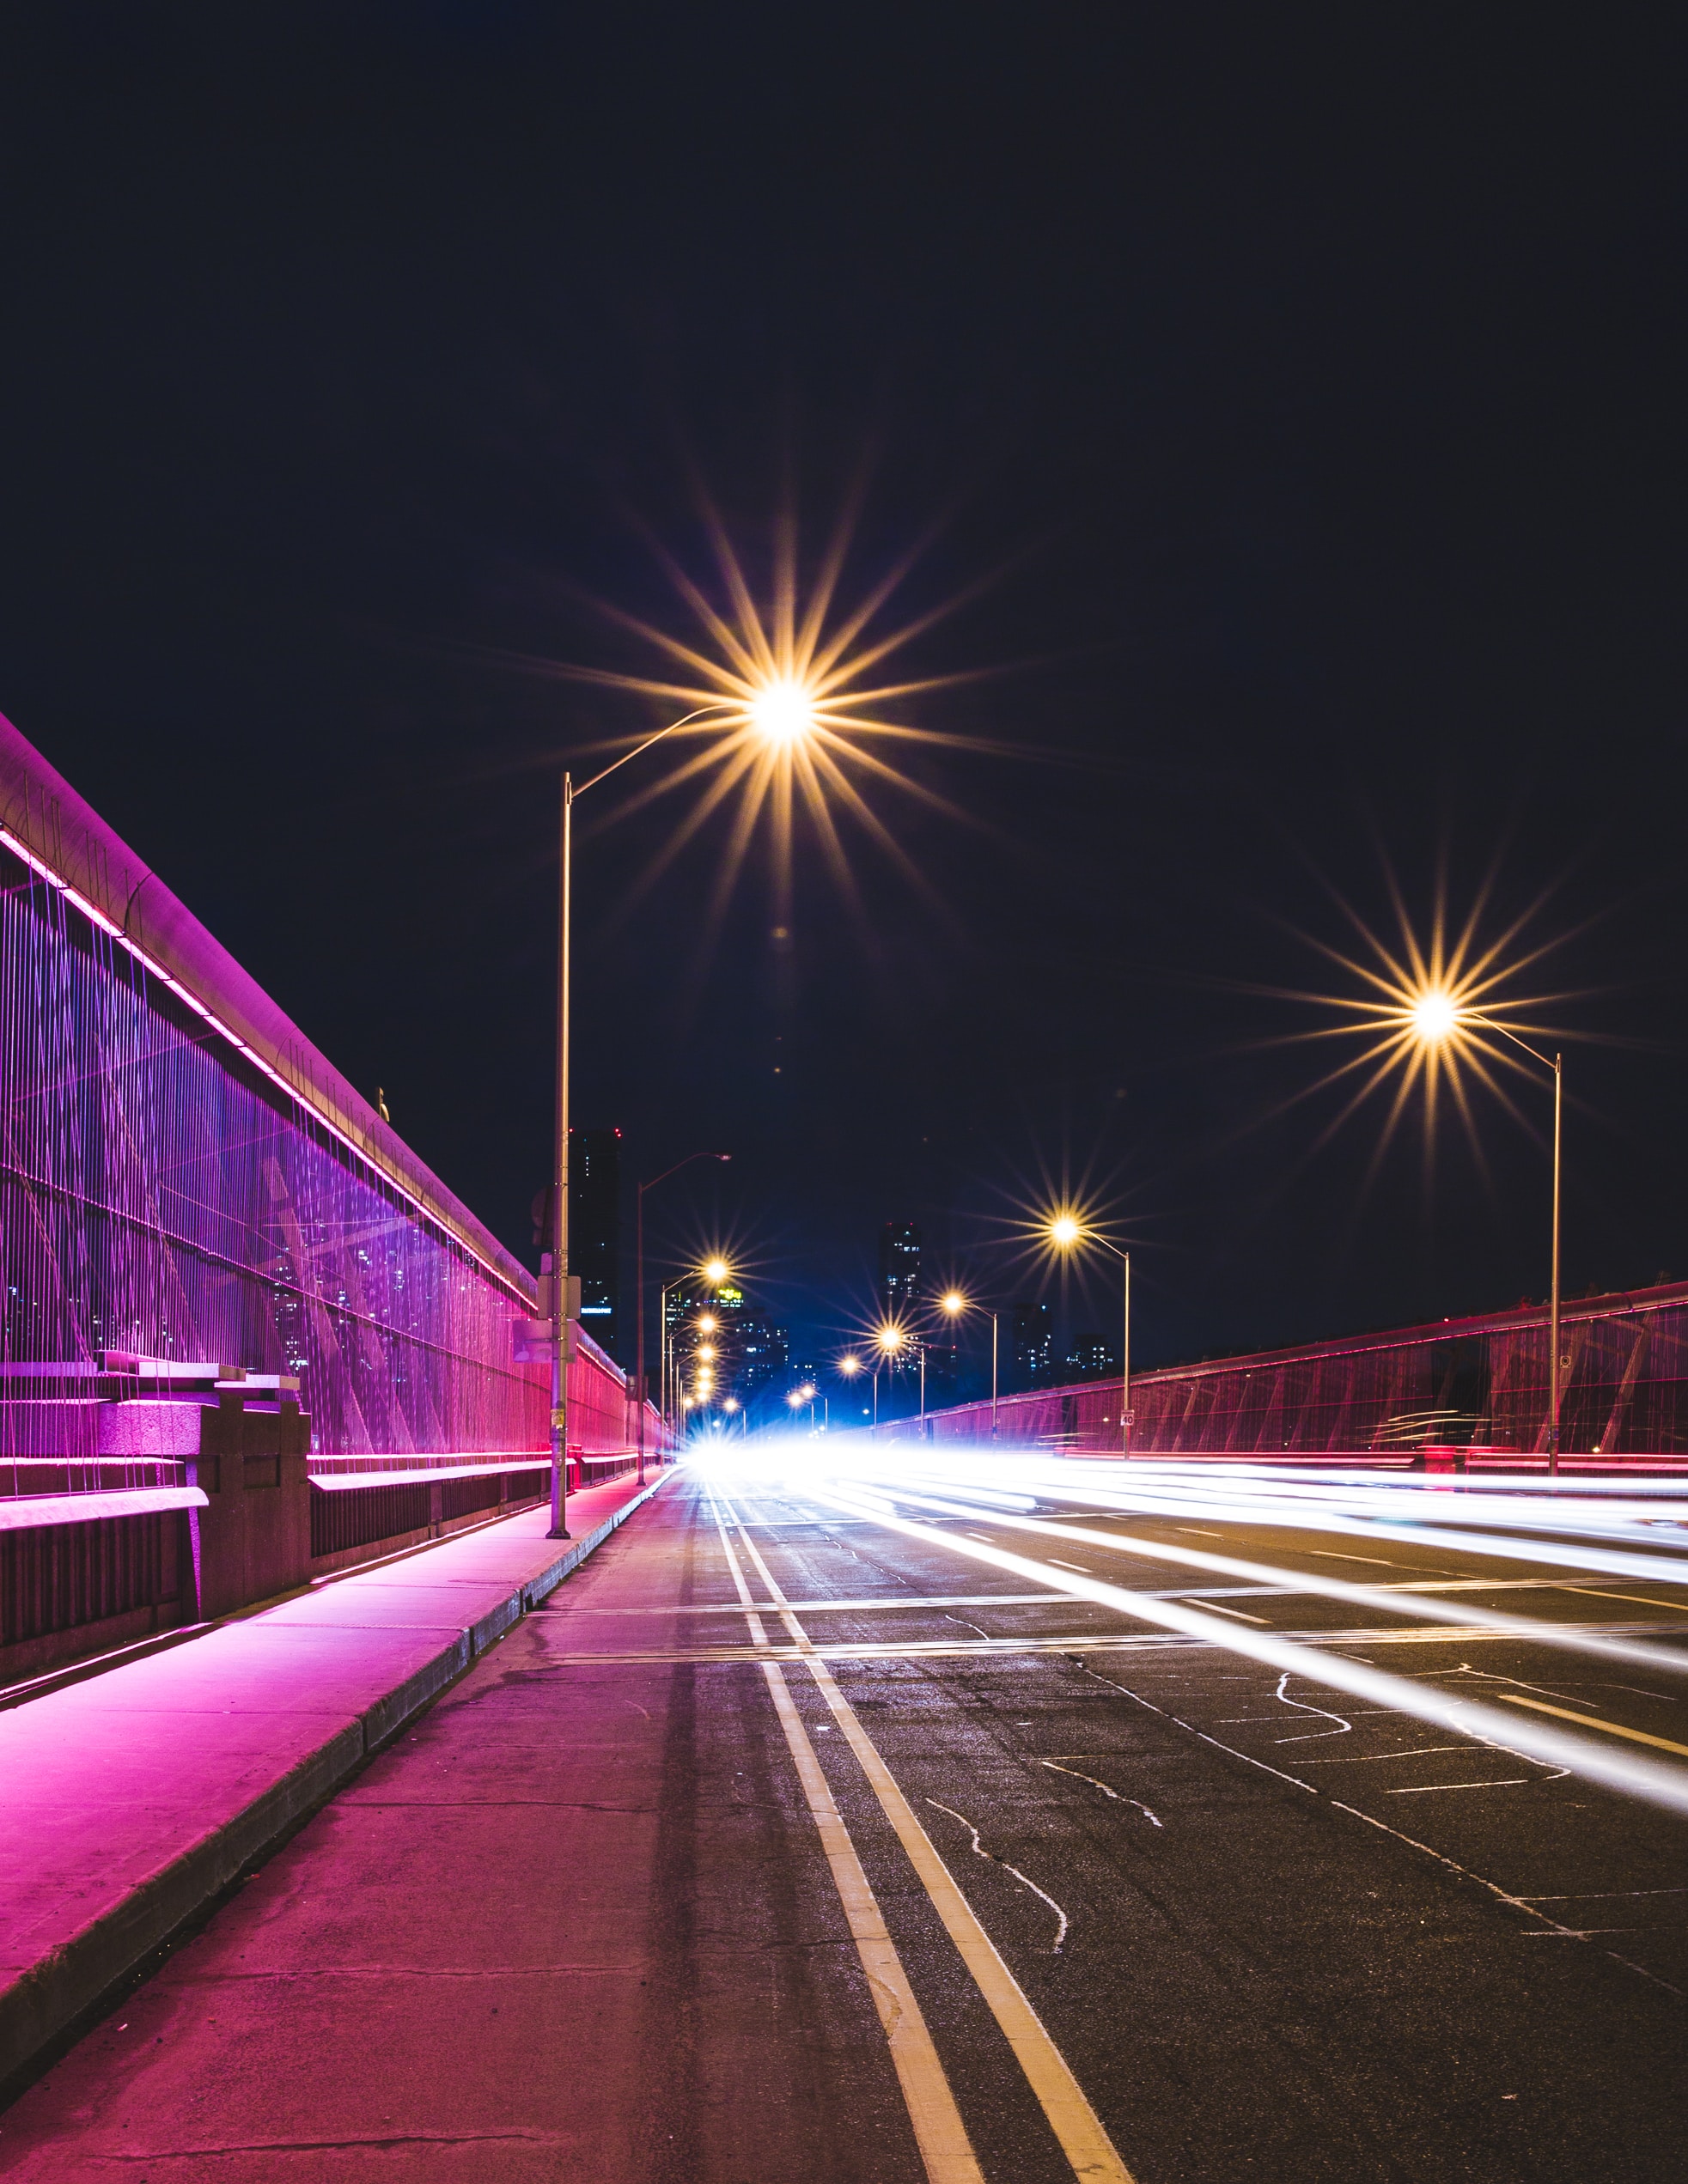 Enlightening the Night: Street Light Solutions